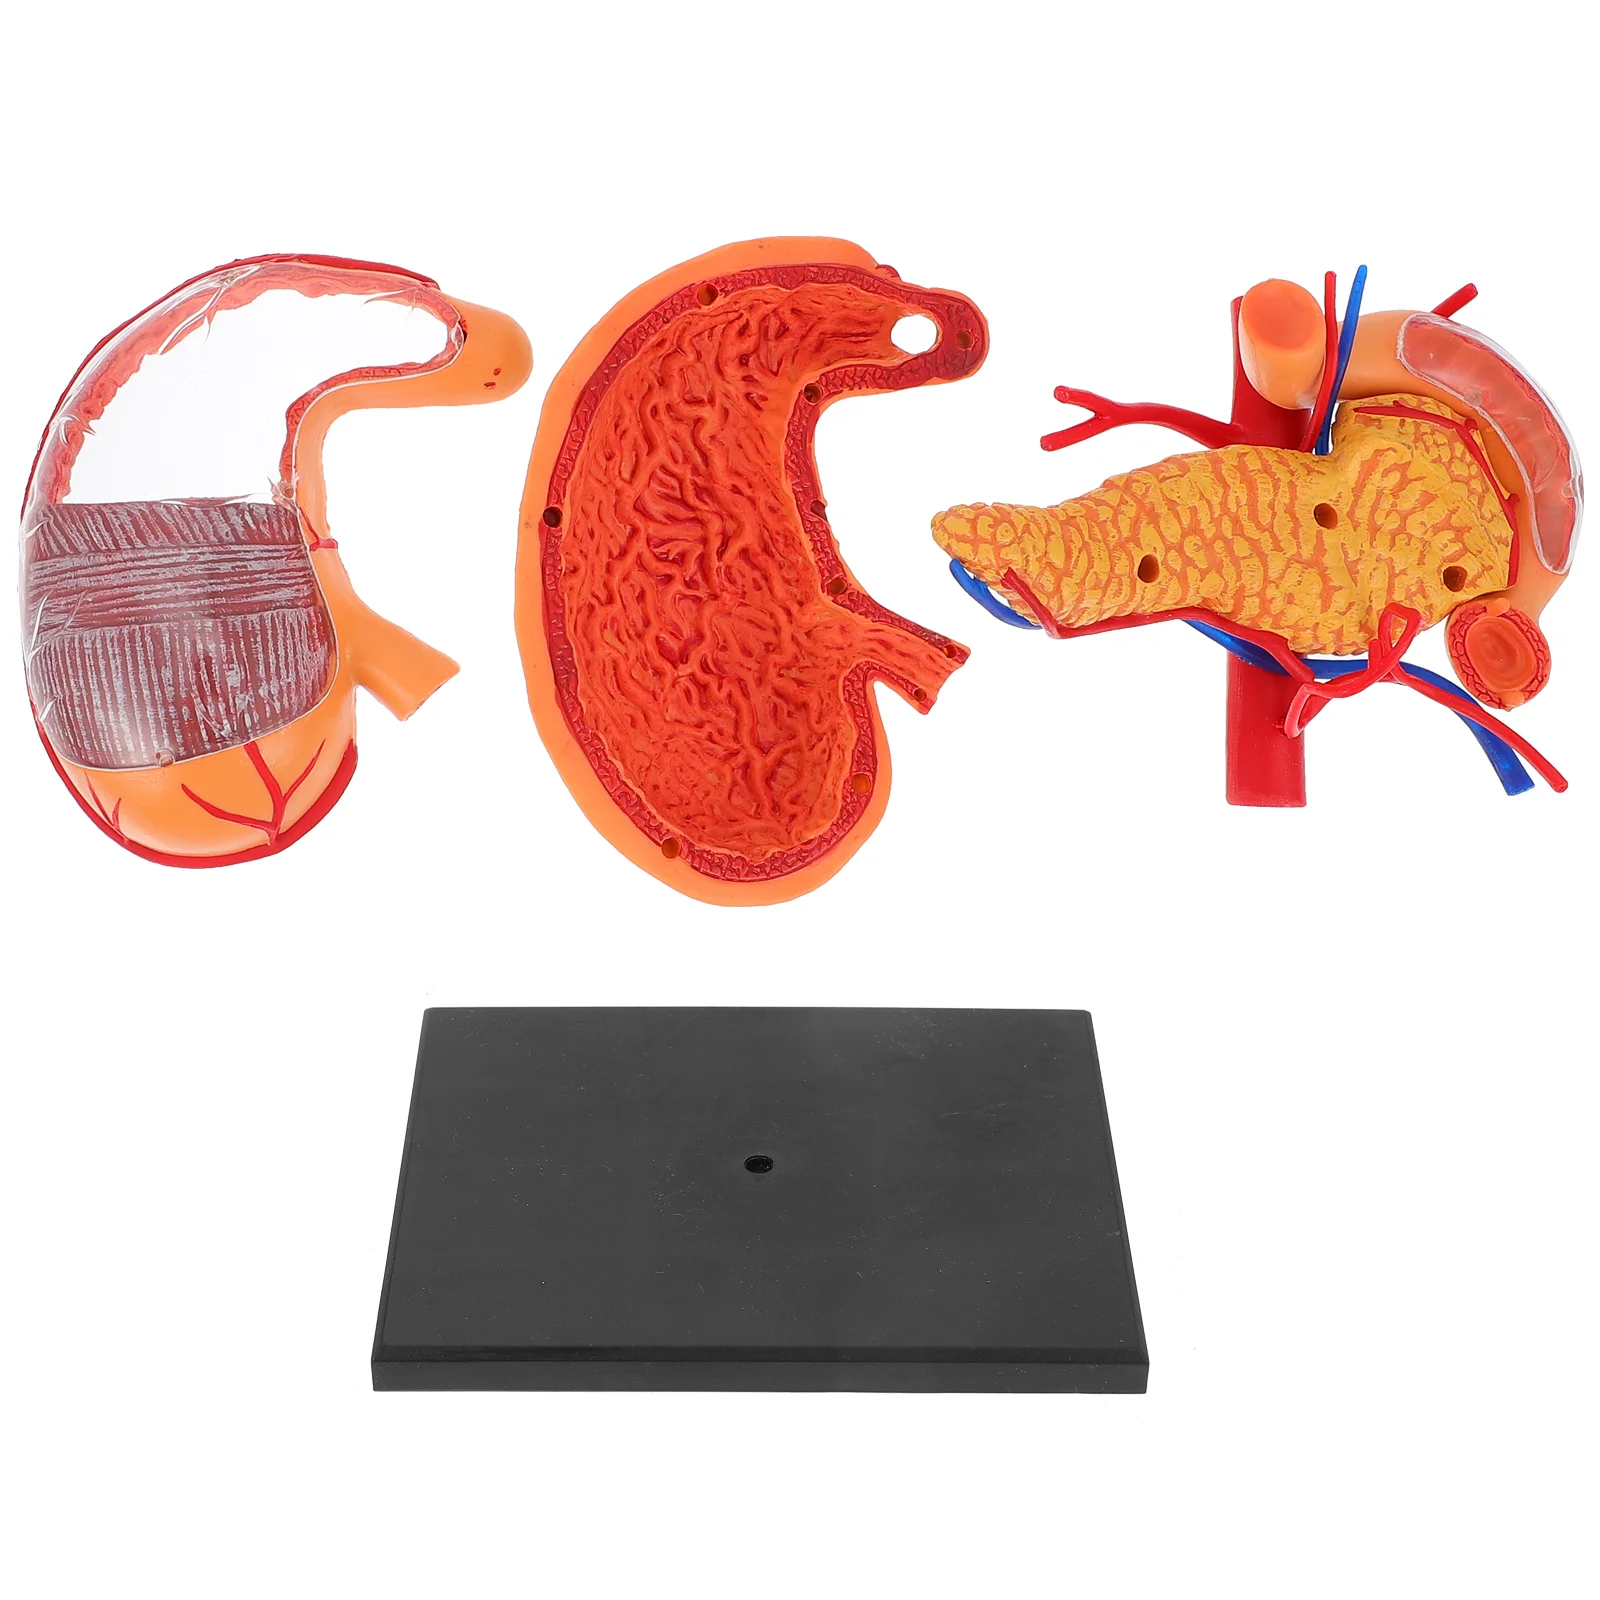 

Бактериальная модель человеческого желудка, анатомическое обучающее оборудование, медицинская биологическая демонстрация